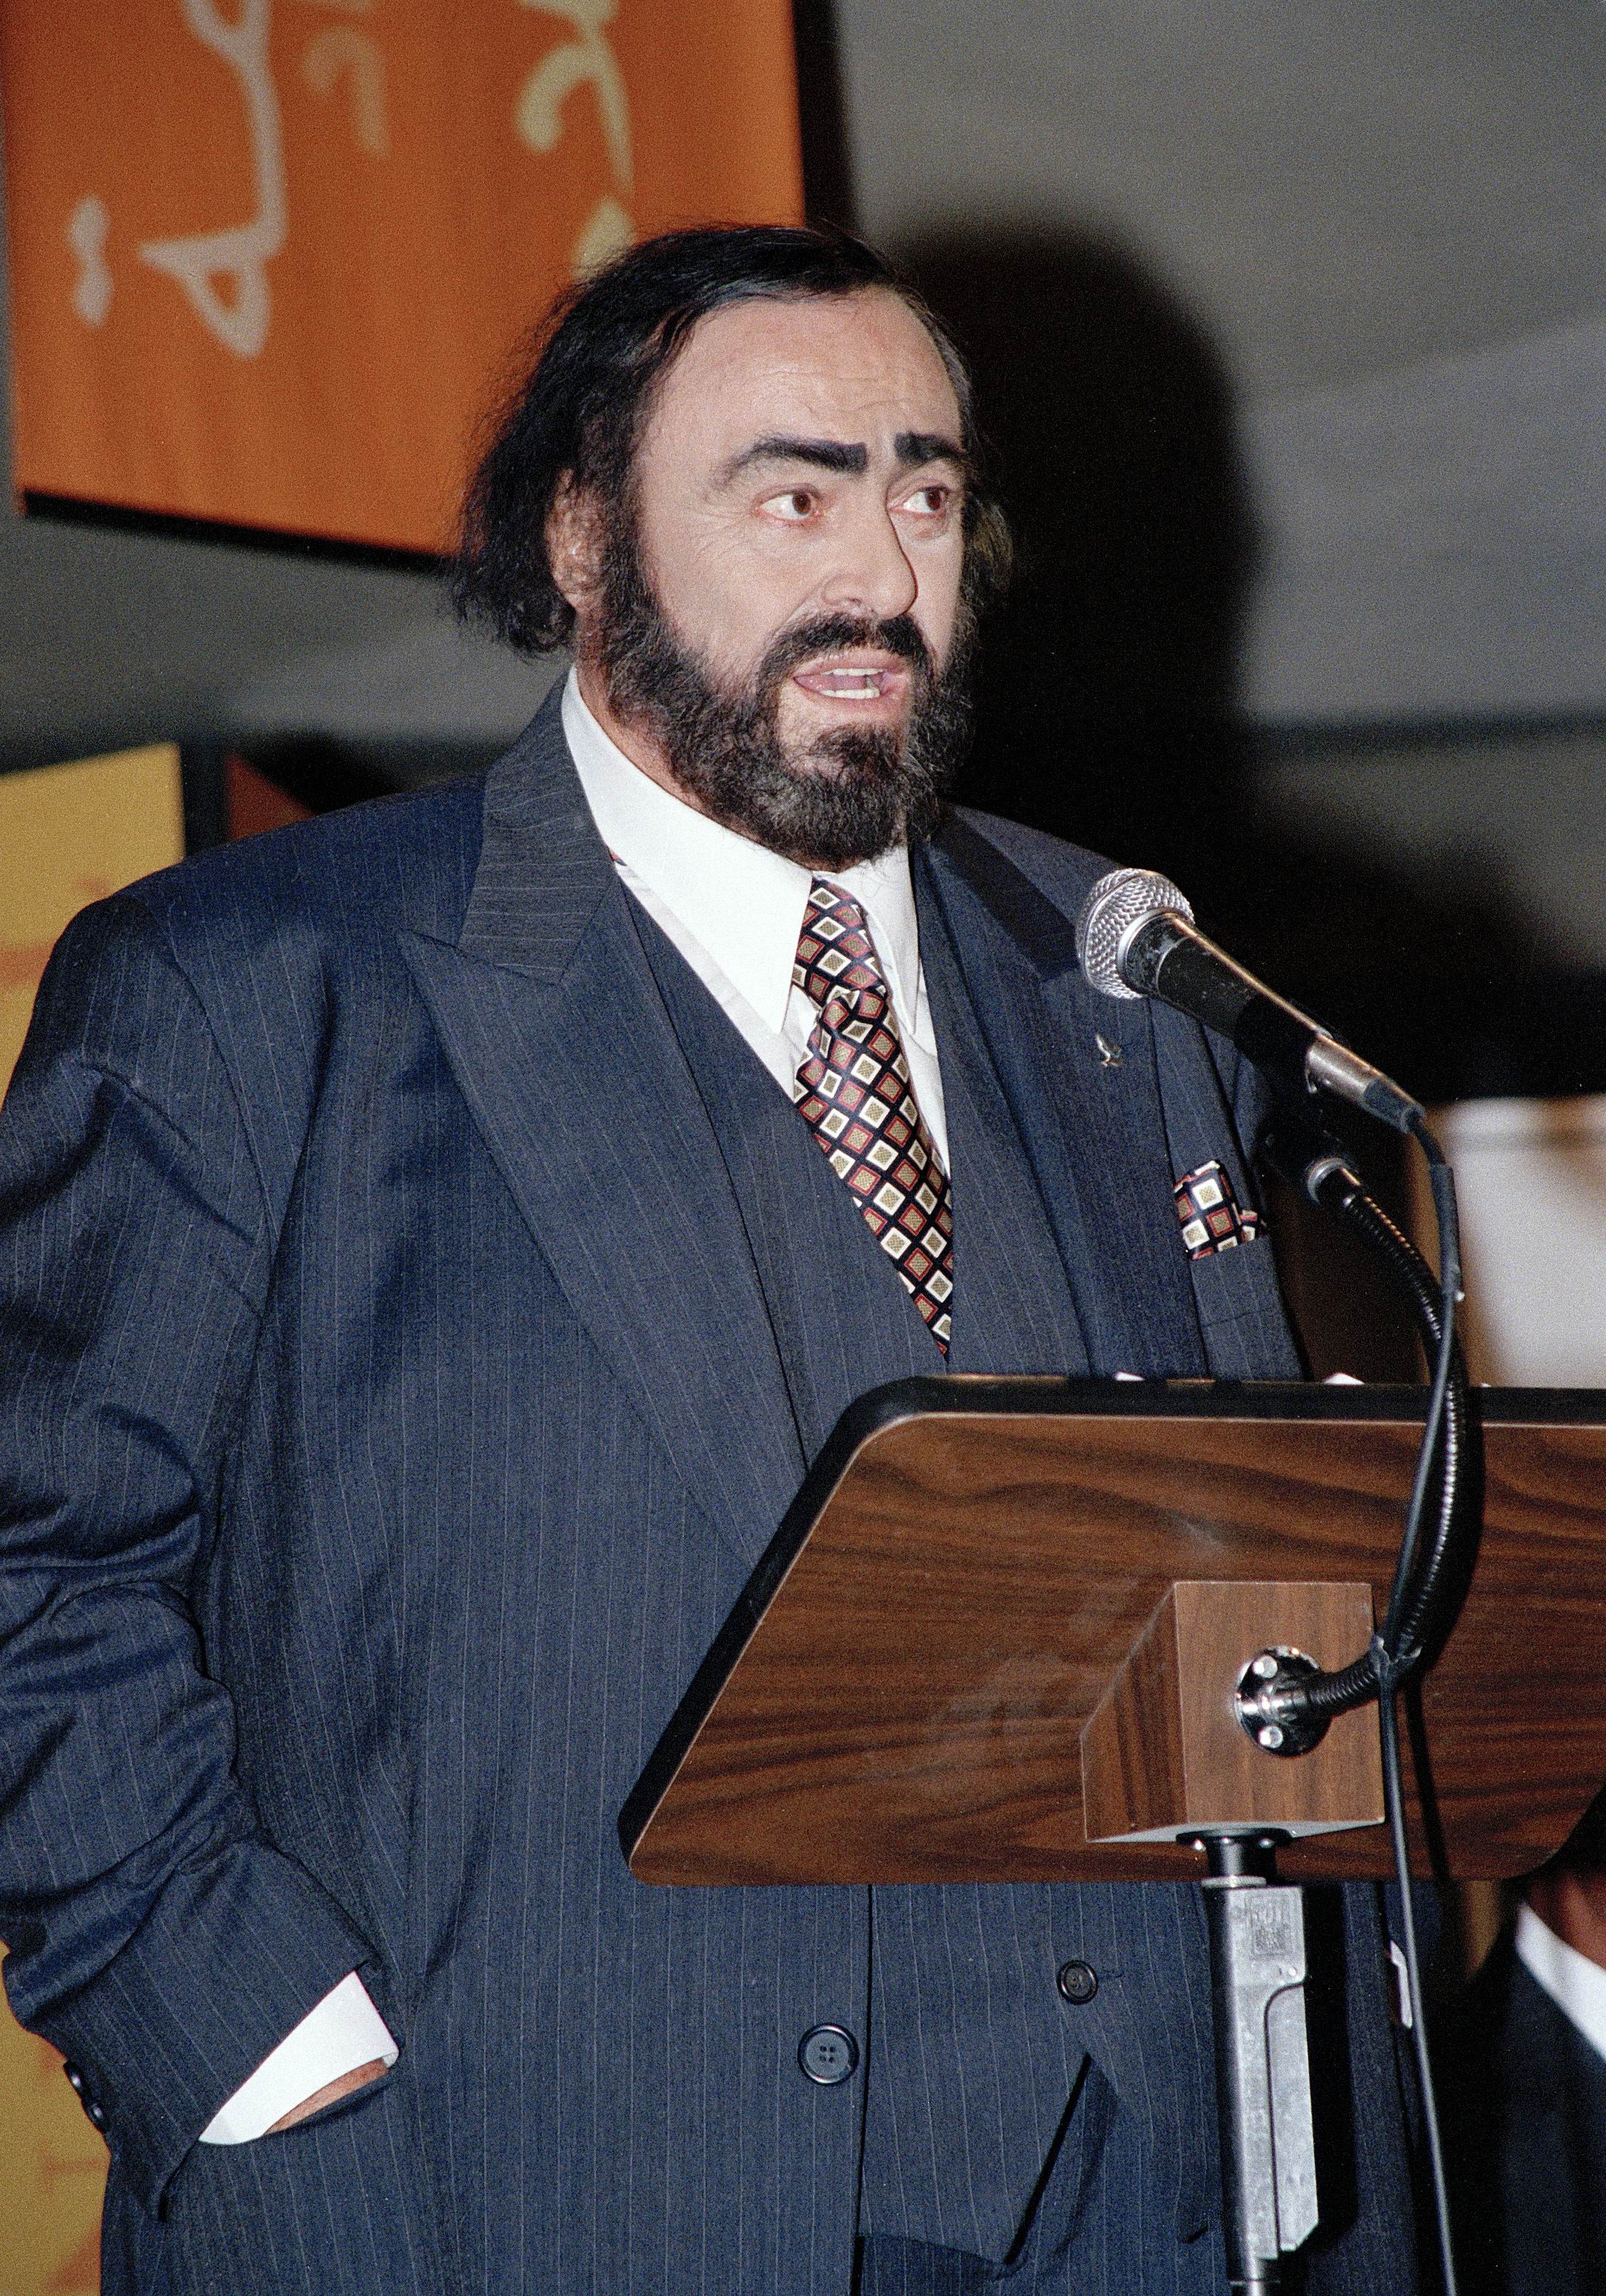 Mensajero de la paz de la ONU - Sr. Luciano Pavarotti